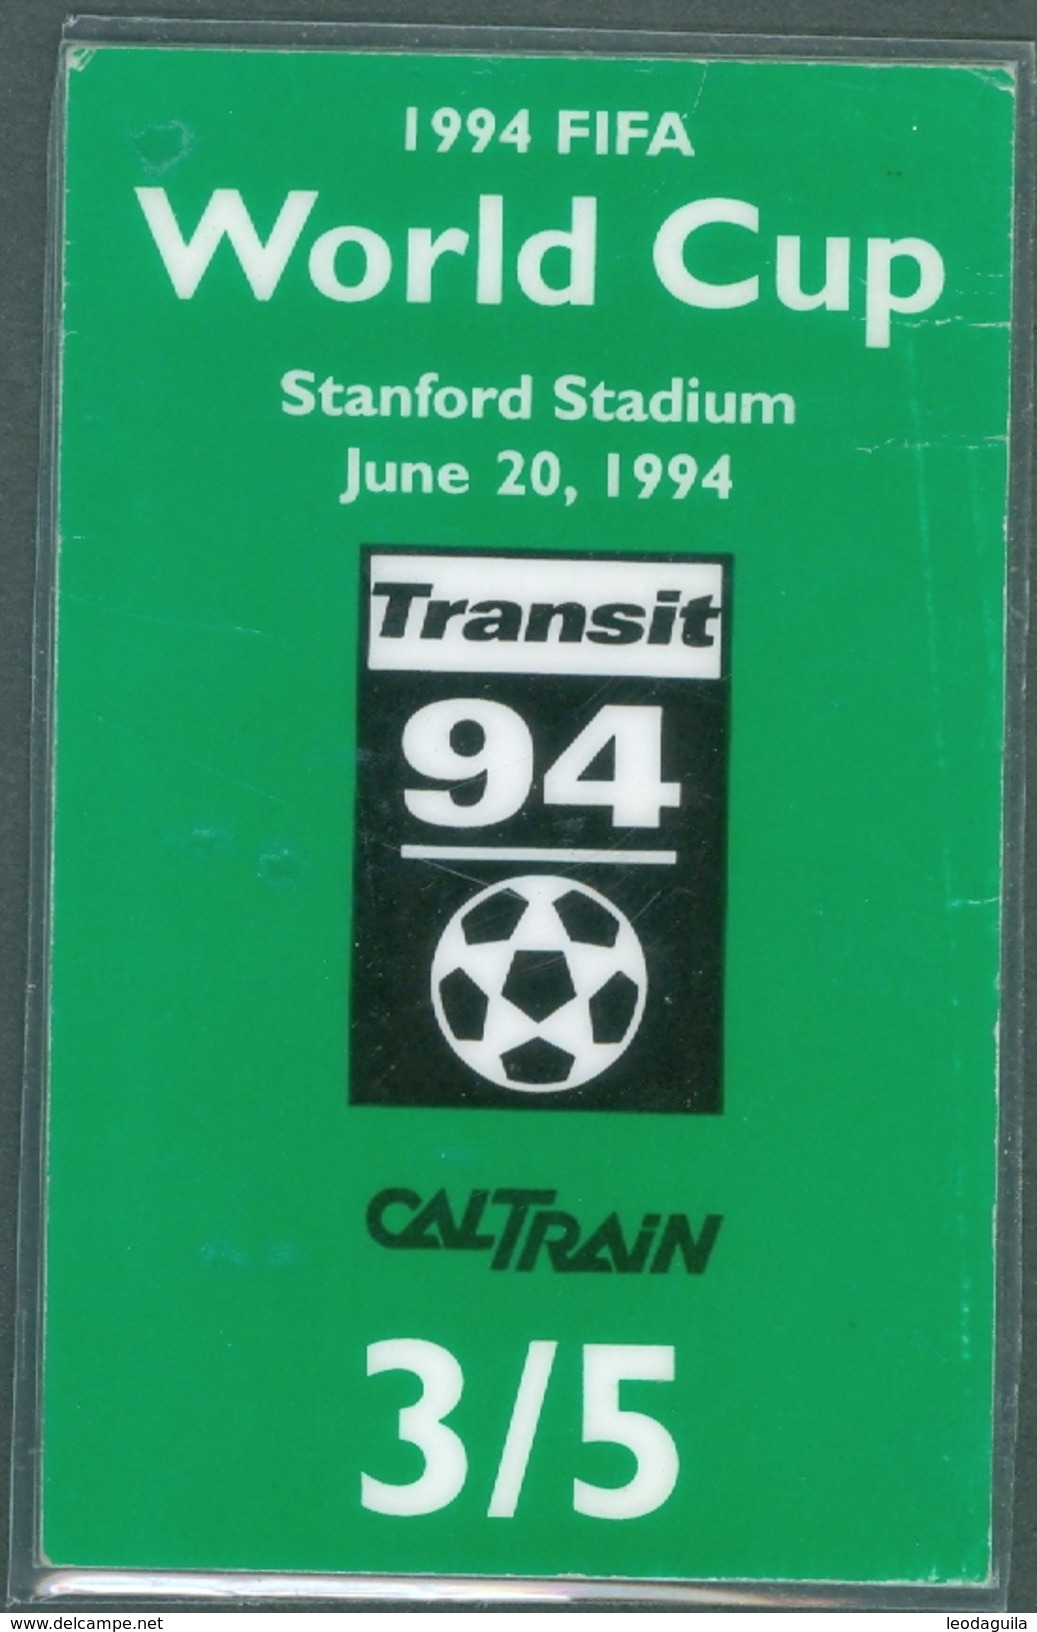 RAILWAY TICKET  -   CALTRAIN TICKET TO STANFORD STADIUM - USA  - FIFA WORLD CUP 1994 - Wereld